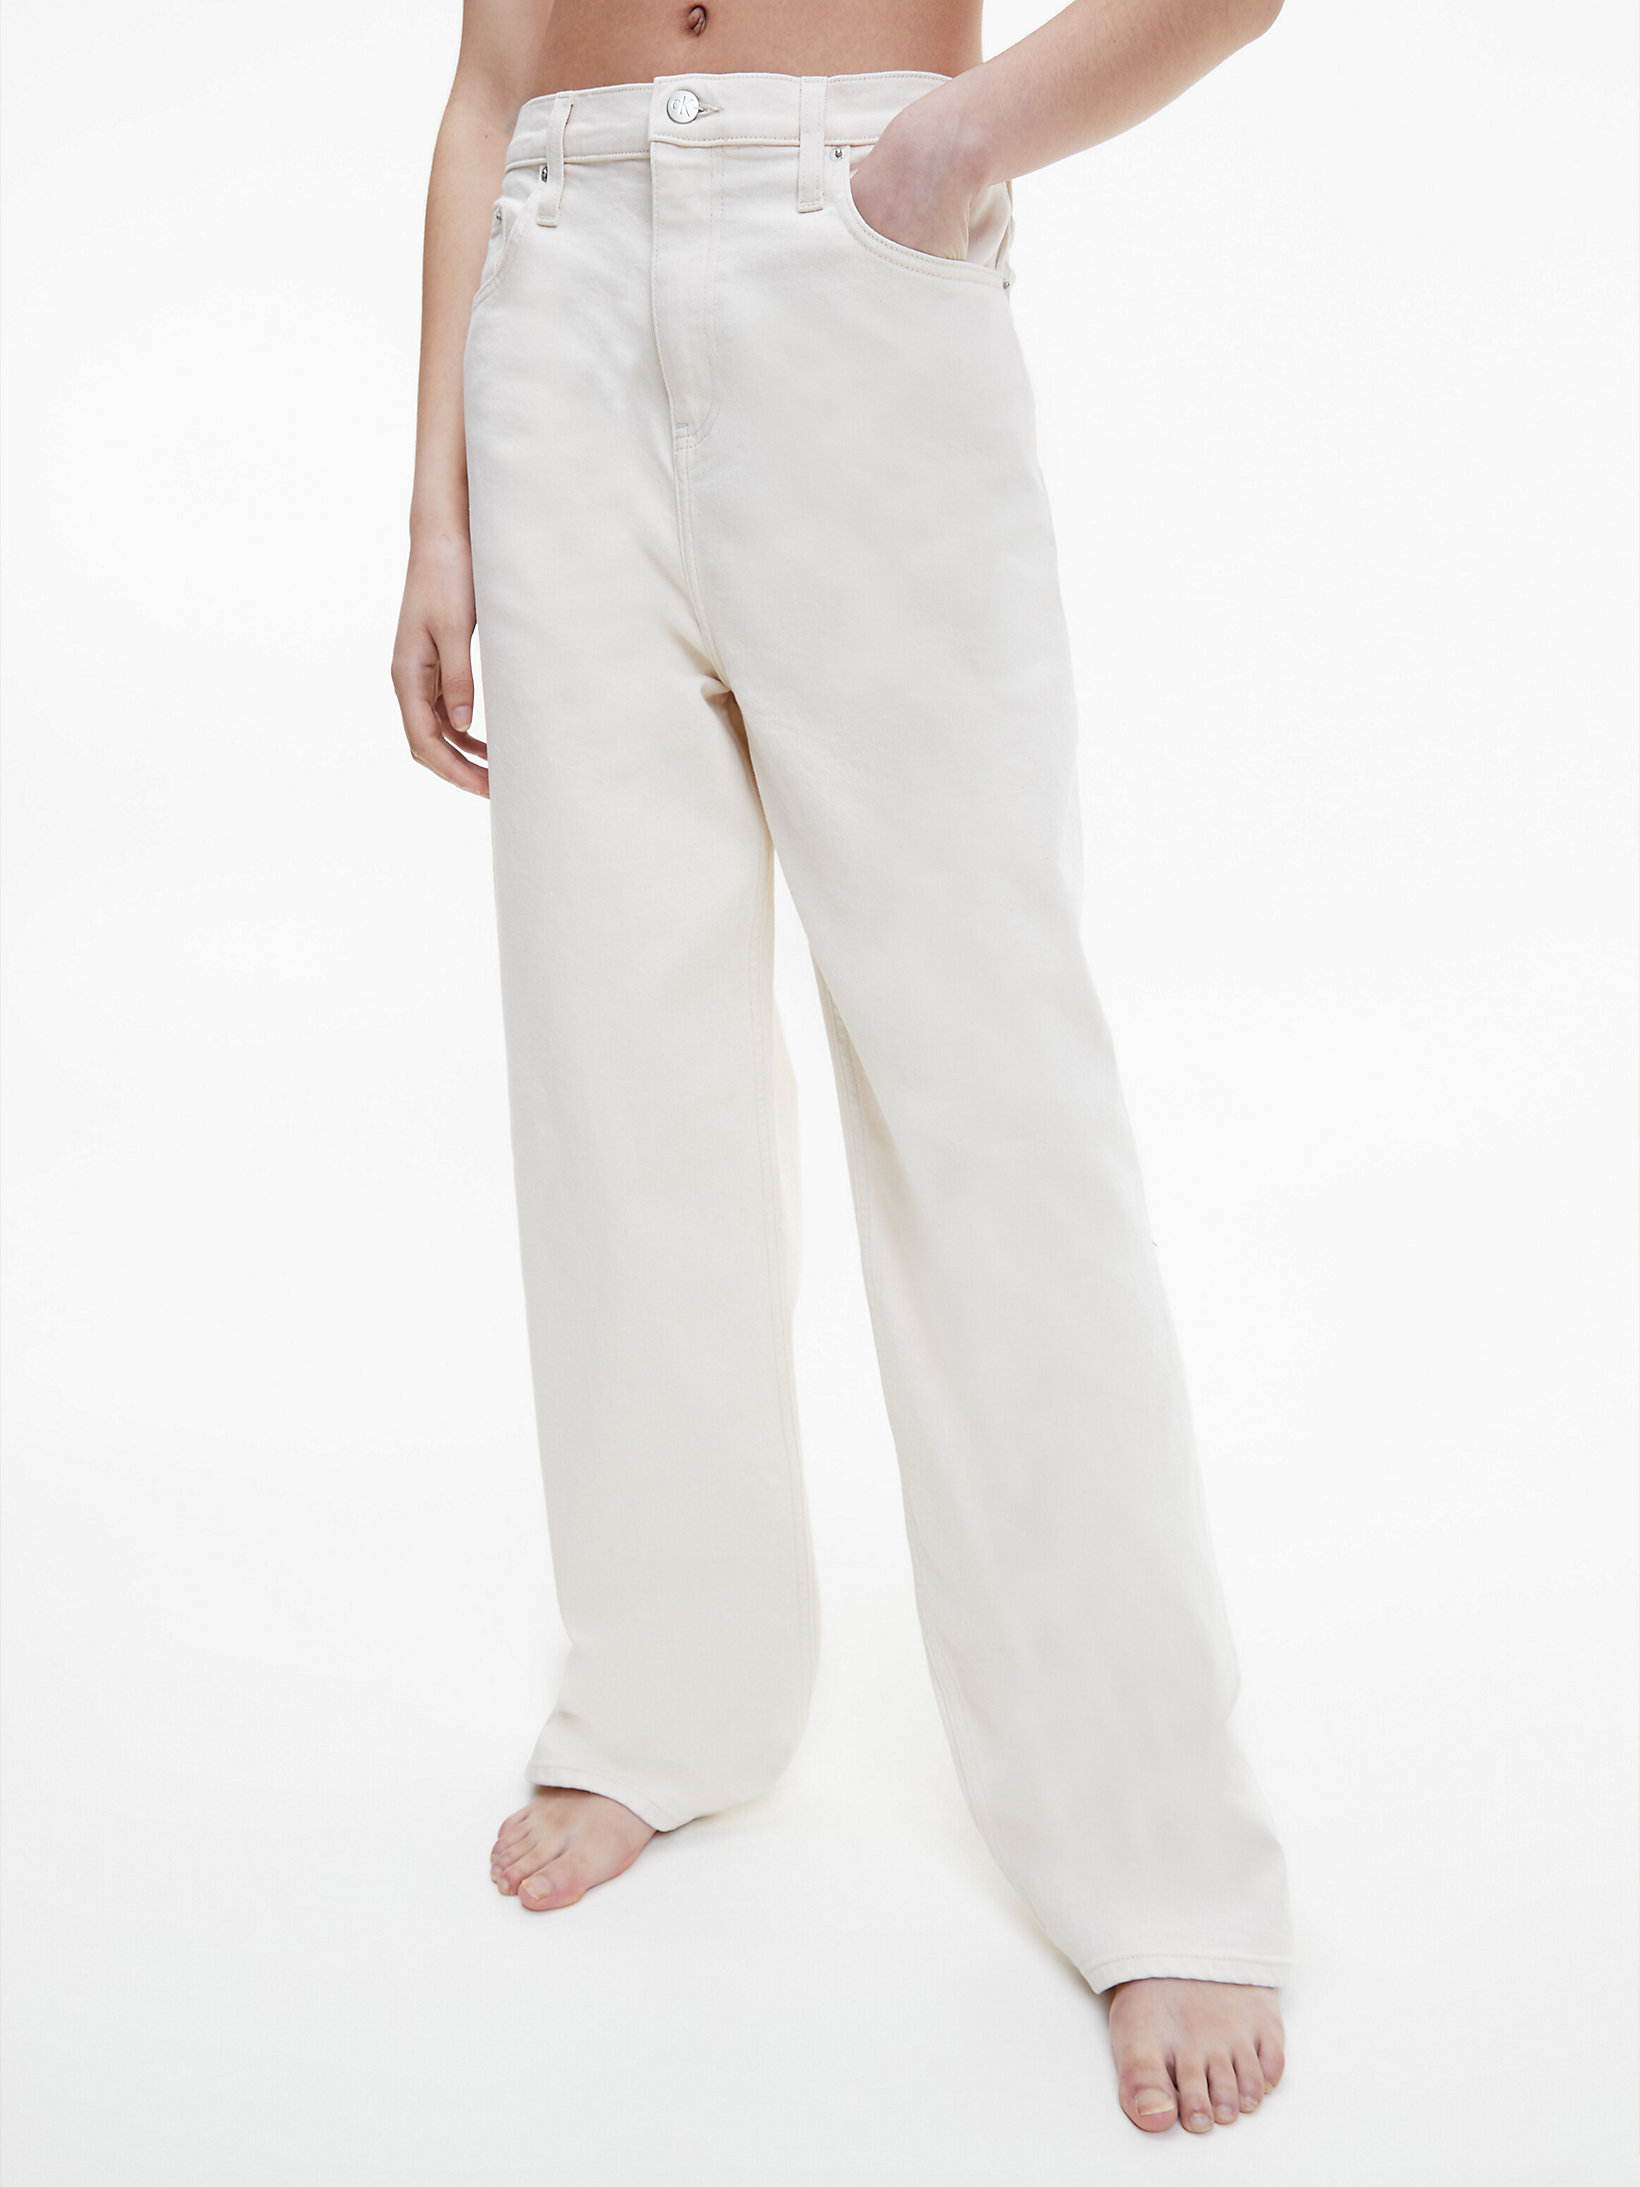 Crescent Moon Relaxed Jeans Mit Hoher Bundhöhe - CK One undefined Damen Calvin Klein